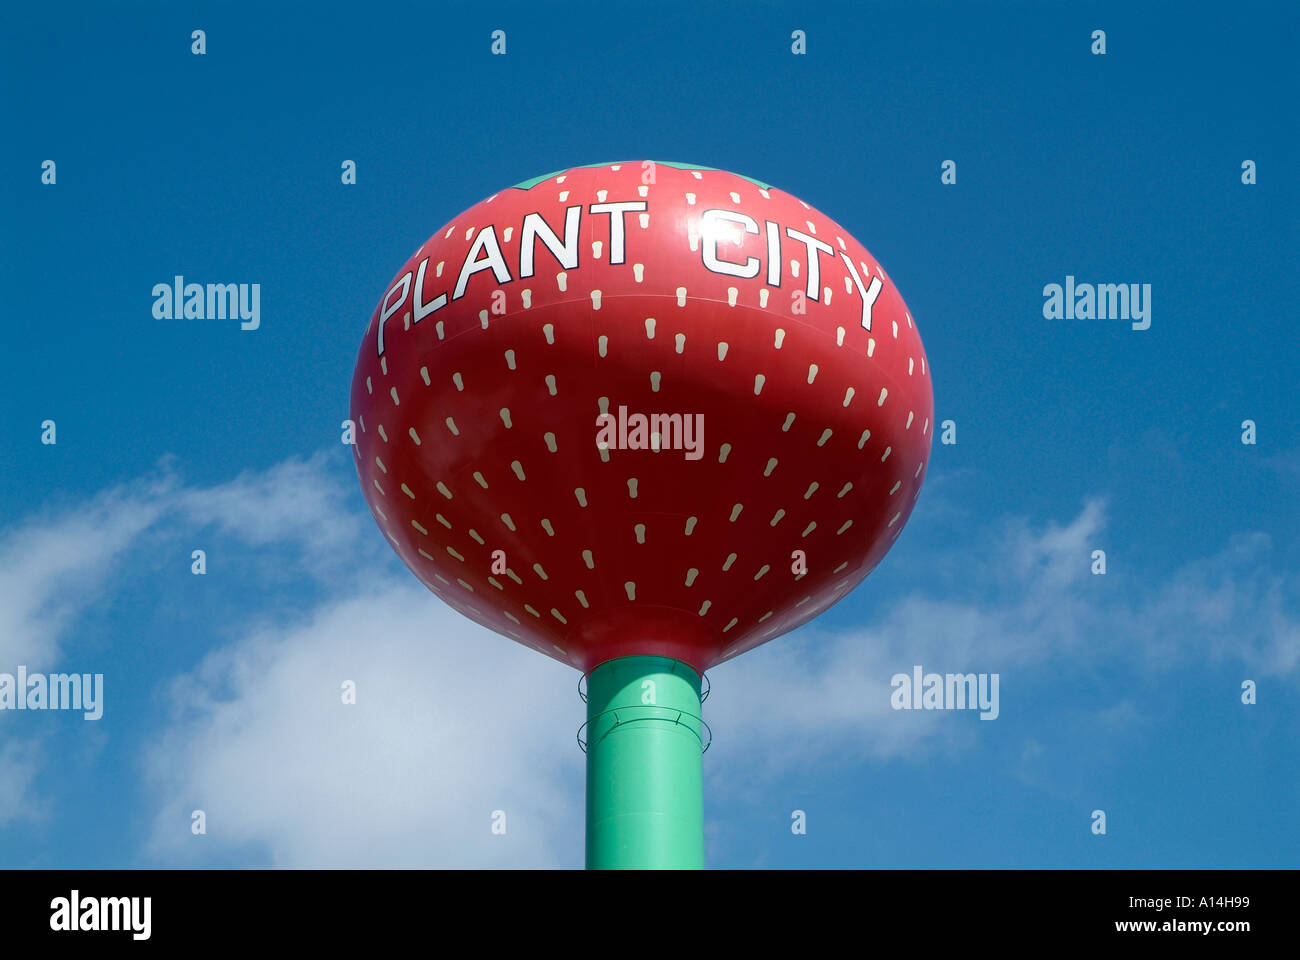 Plant City Florida Wasserturm symbolisiert die Erdbeerhauptstadt von Flower in Plant City Florida Stockfoto